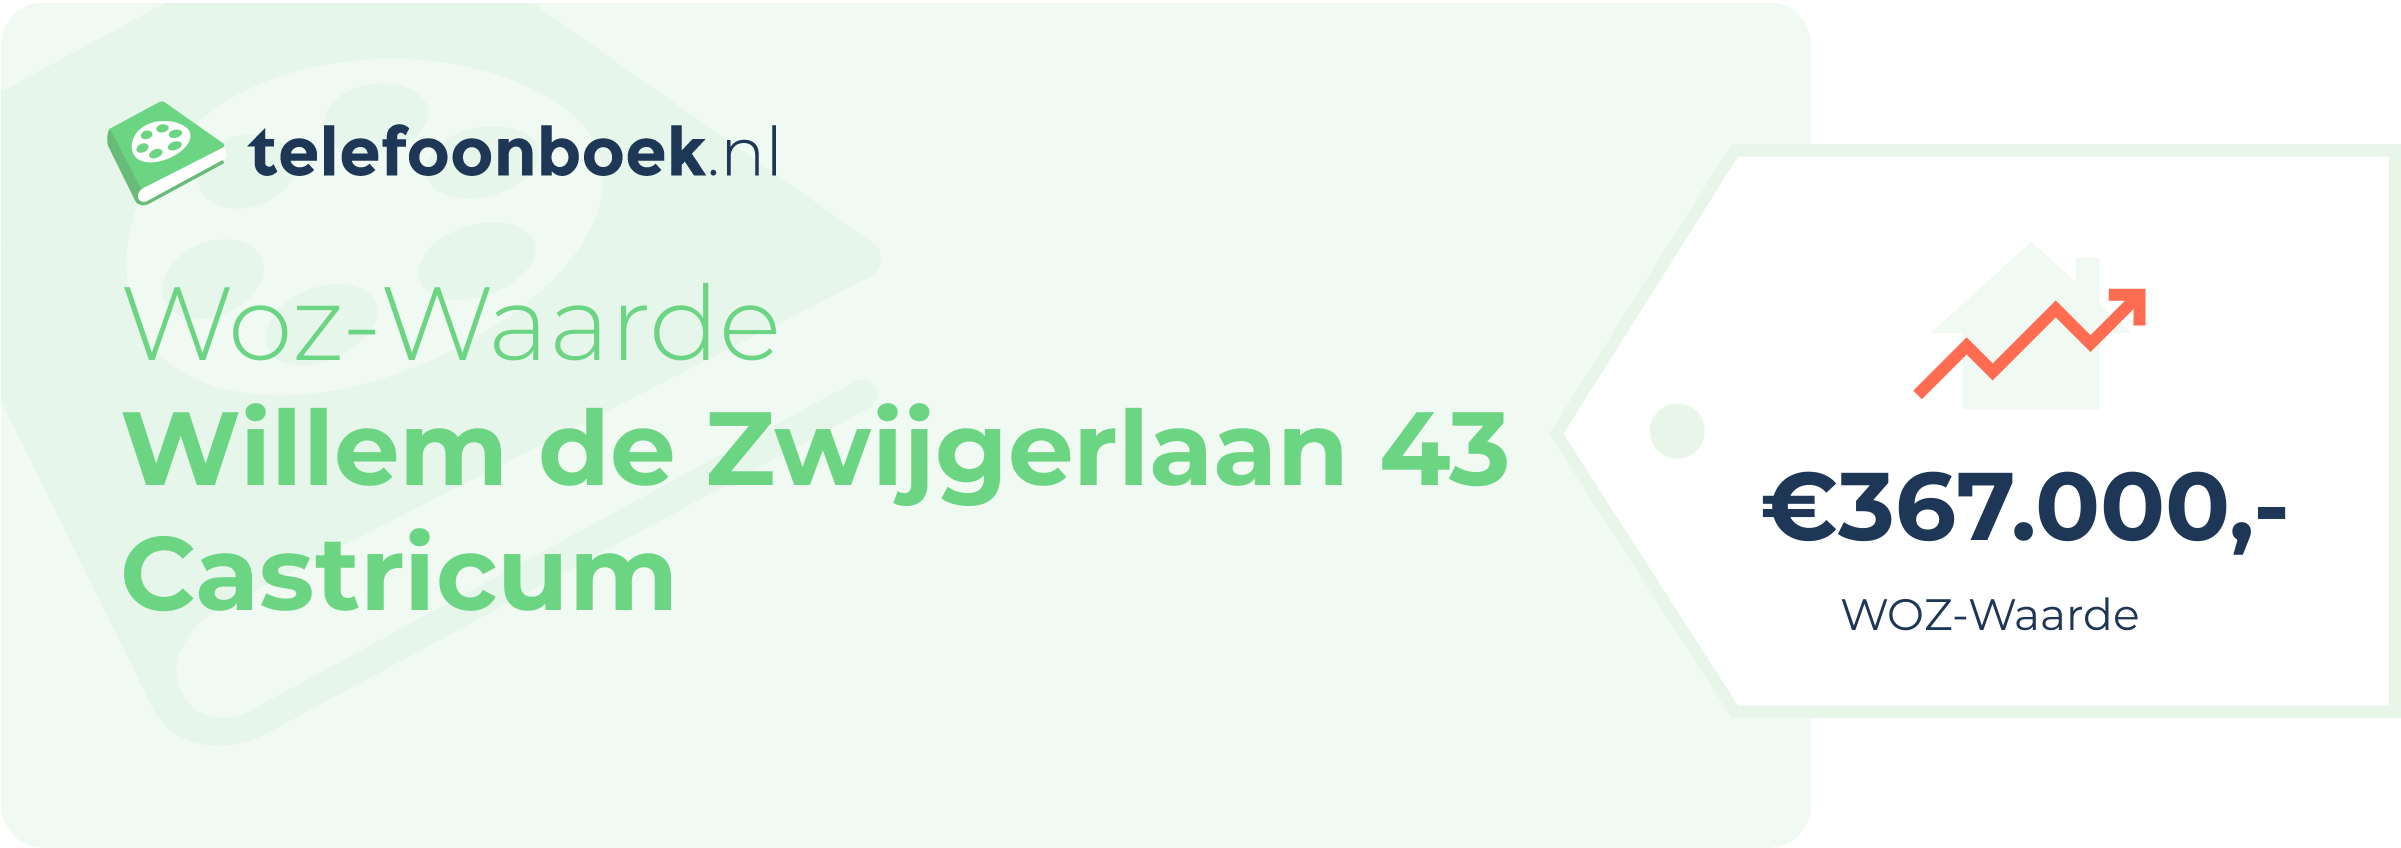 WOZ-waarde Willem De Zwijgerlaan 43 Castricum